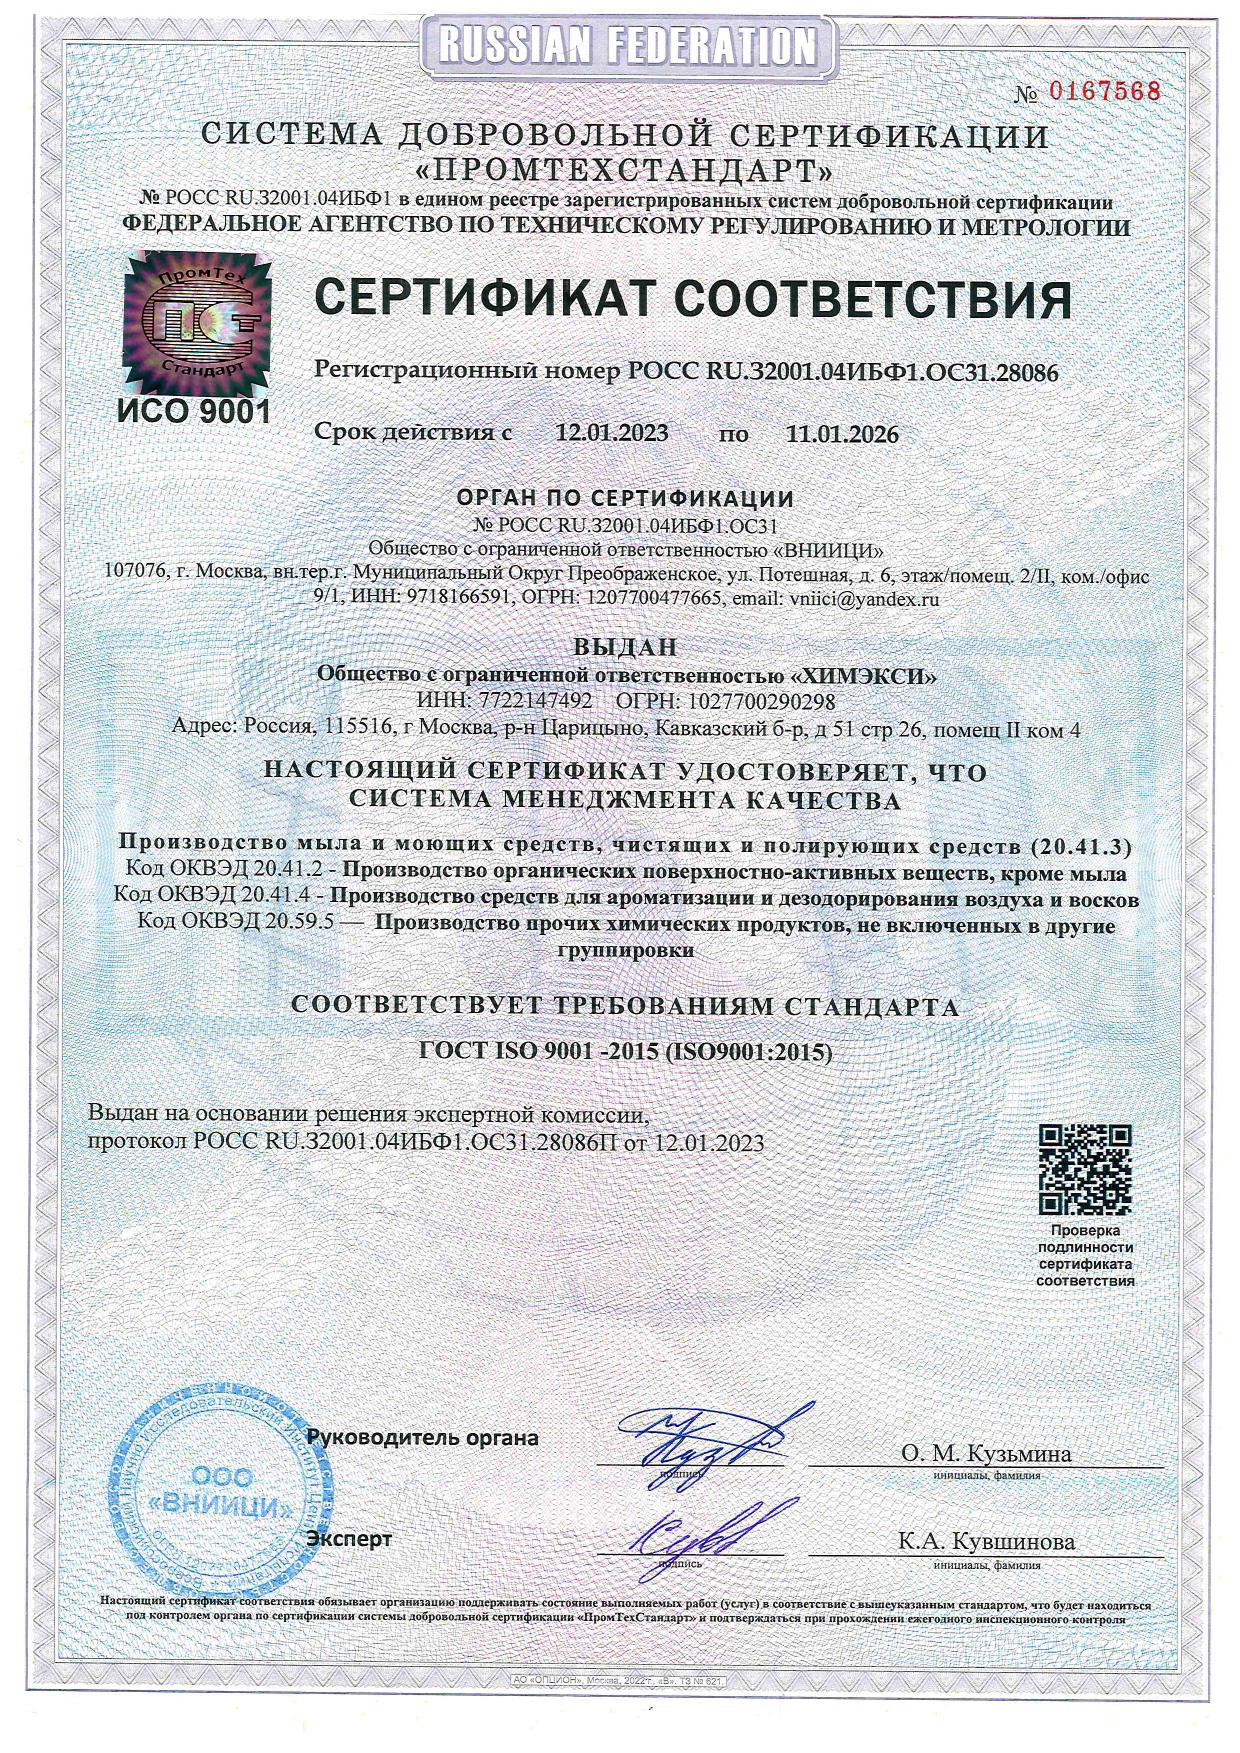 Сертификат соответствия (ХИМЭКСИ)